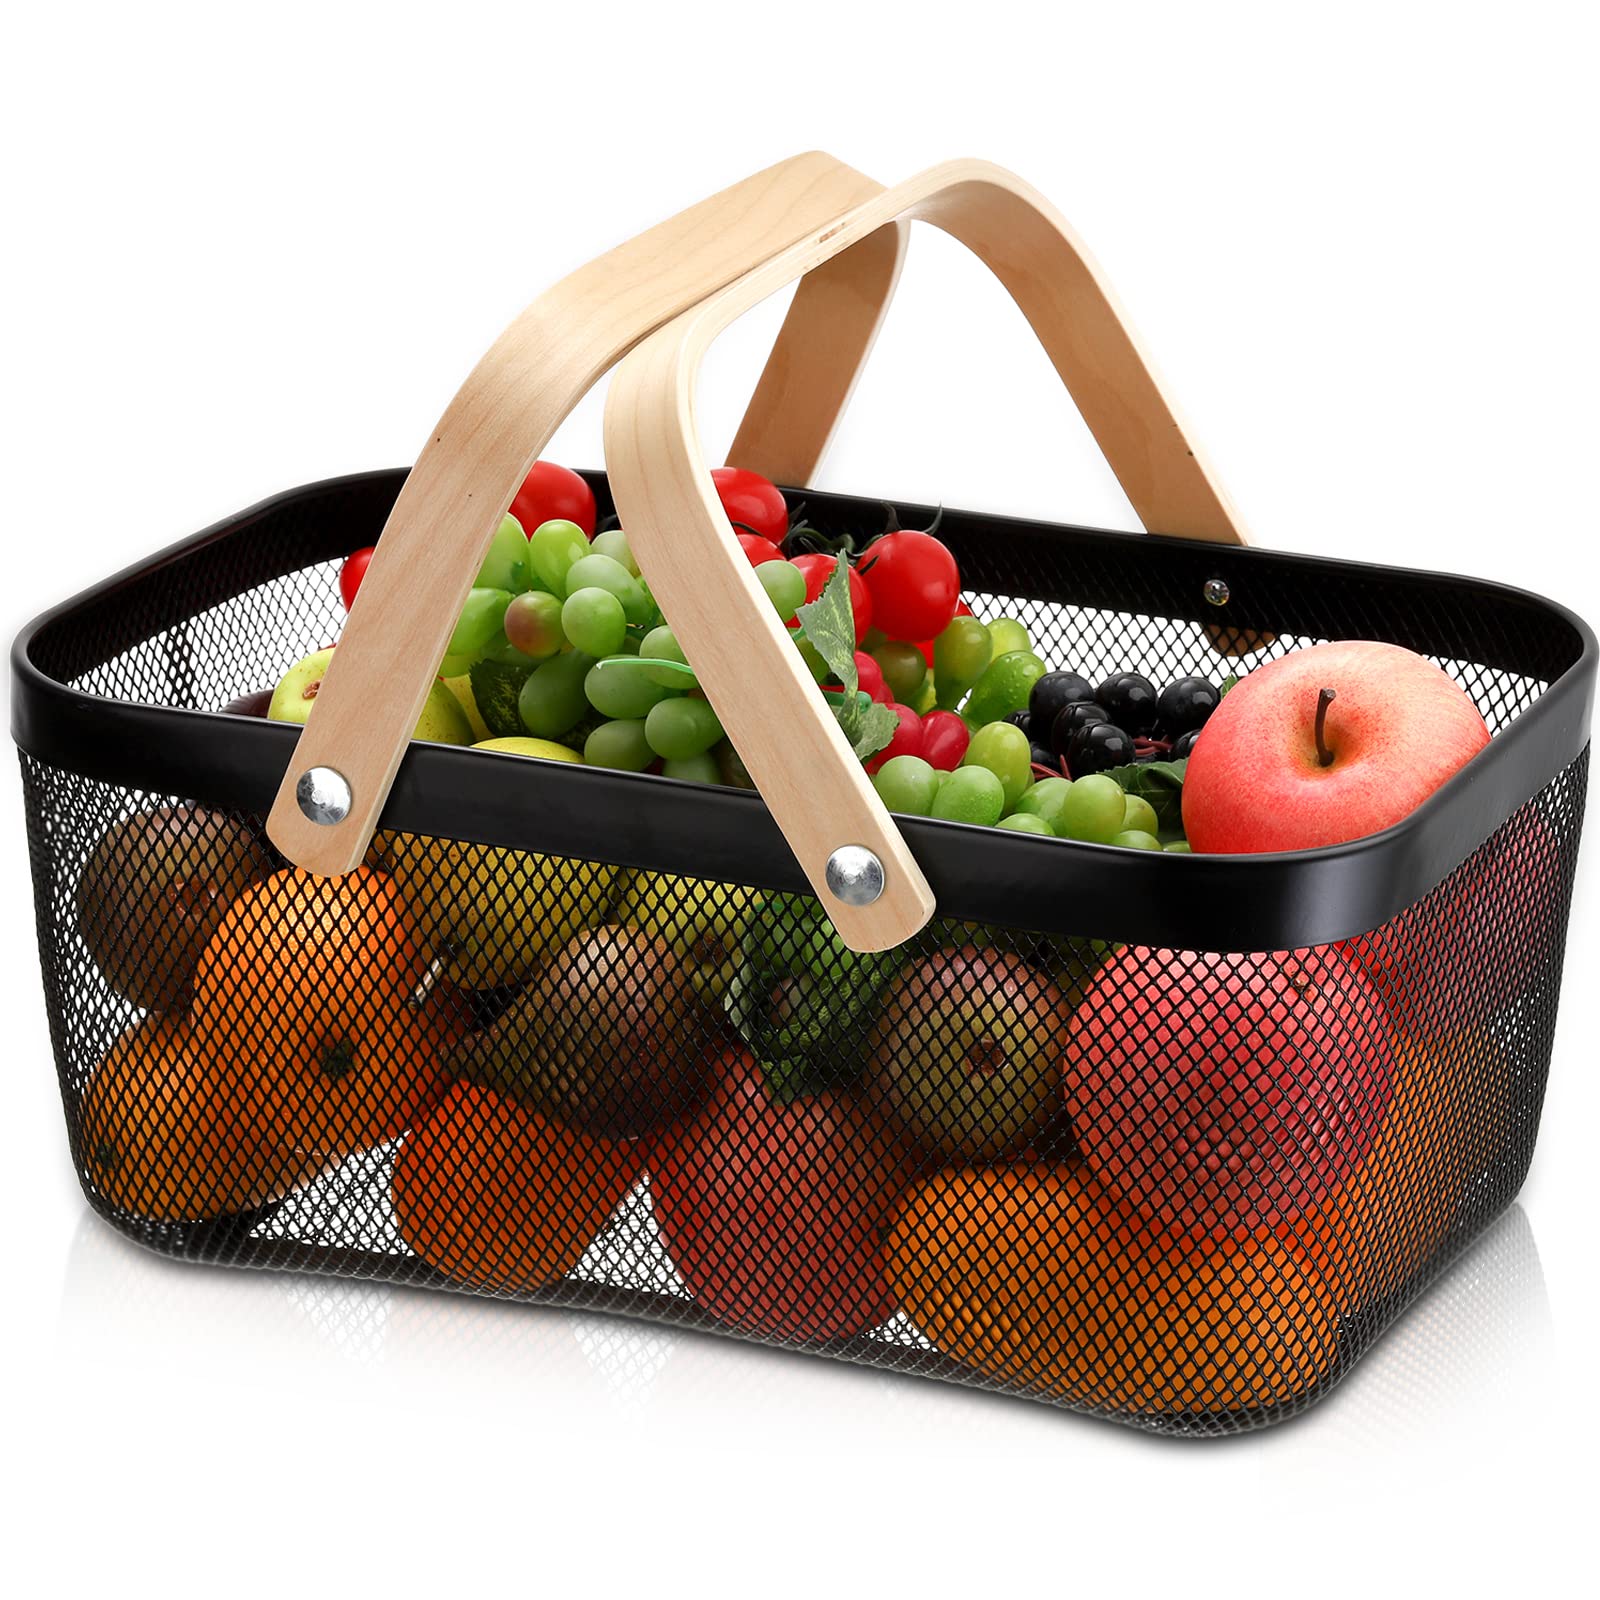 ZEAYEA Mesh Storage Basket with Handle